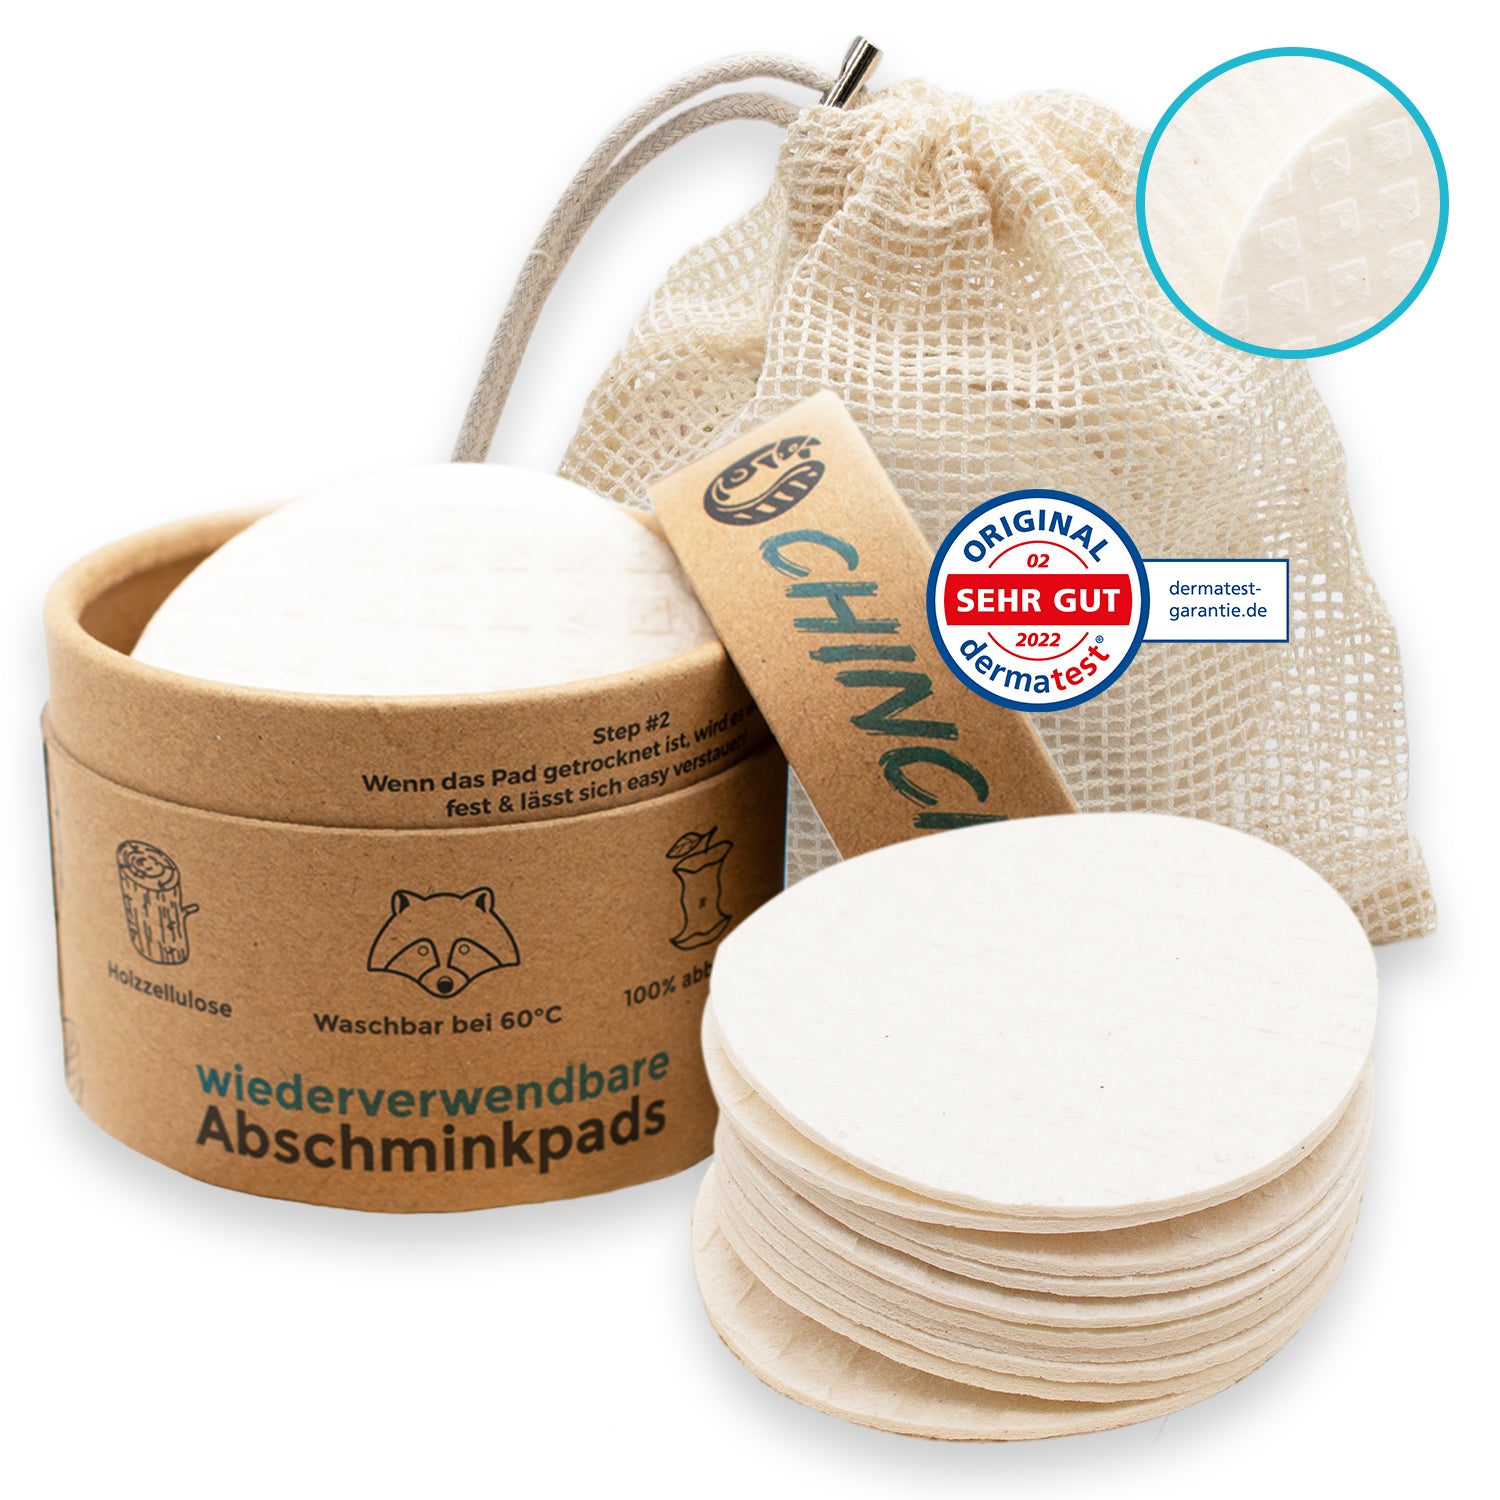 Abschminkpads waschbar & wiederverwendbar, 10 nachhaltige Wattepads, made  in Germany